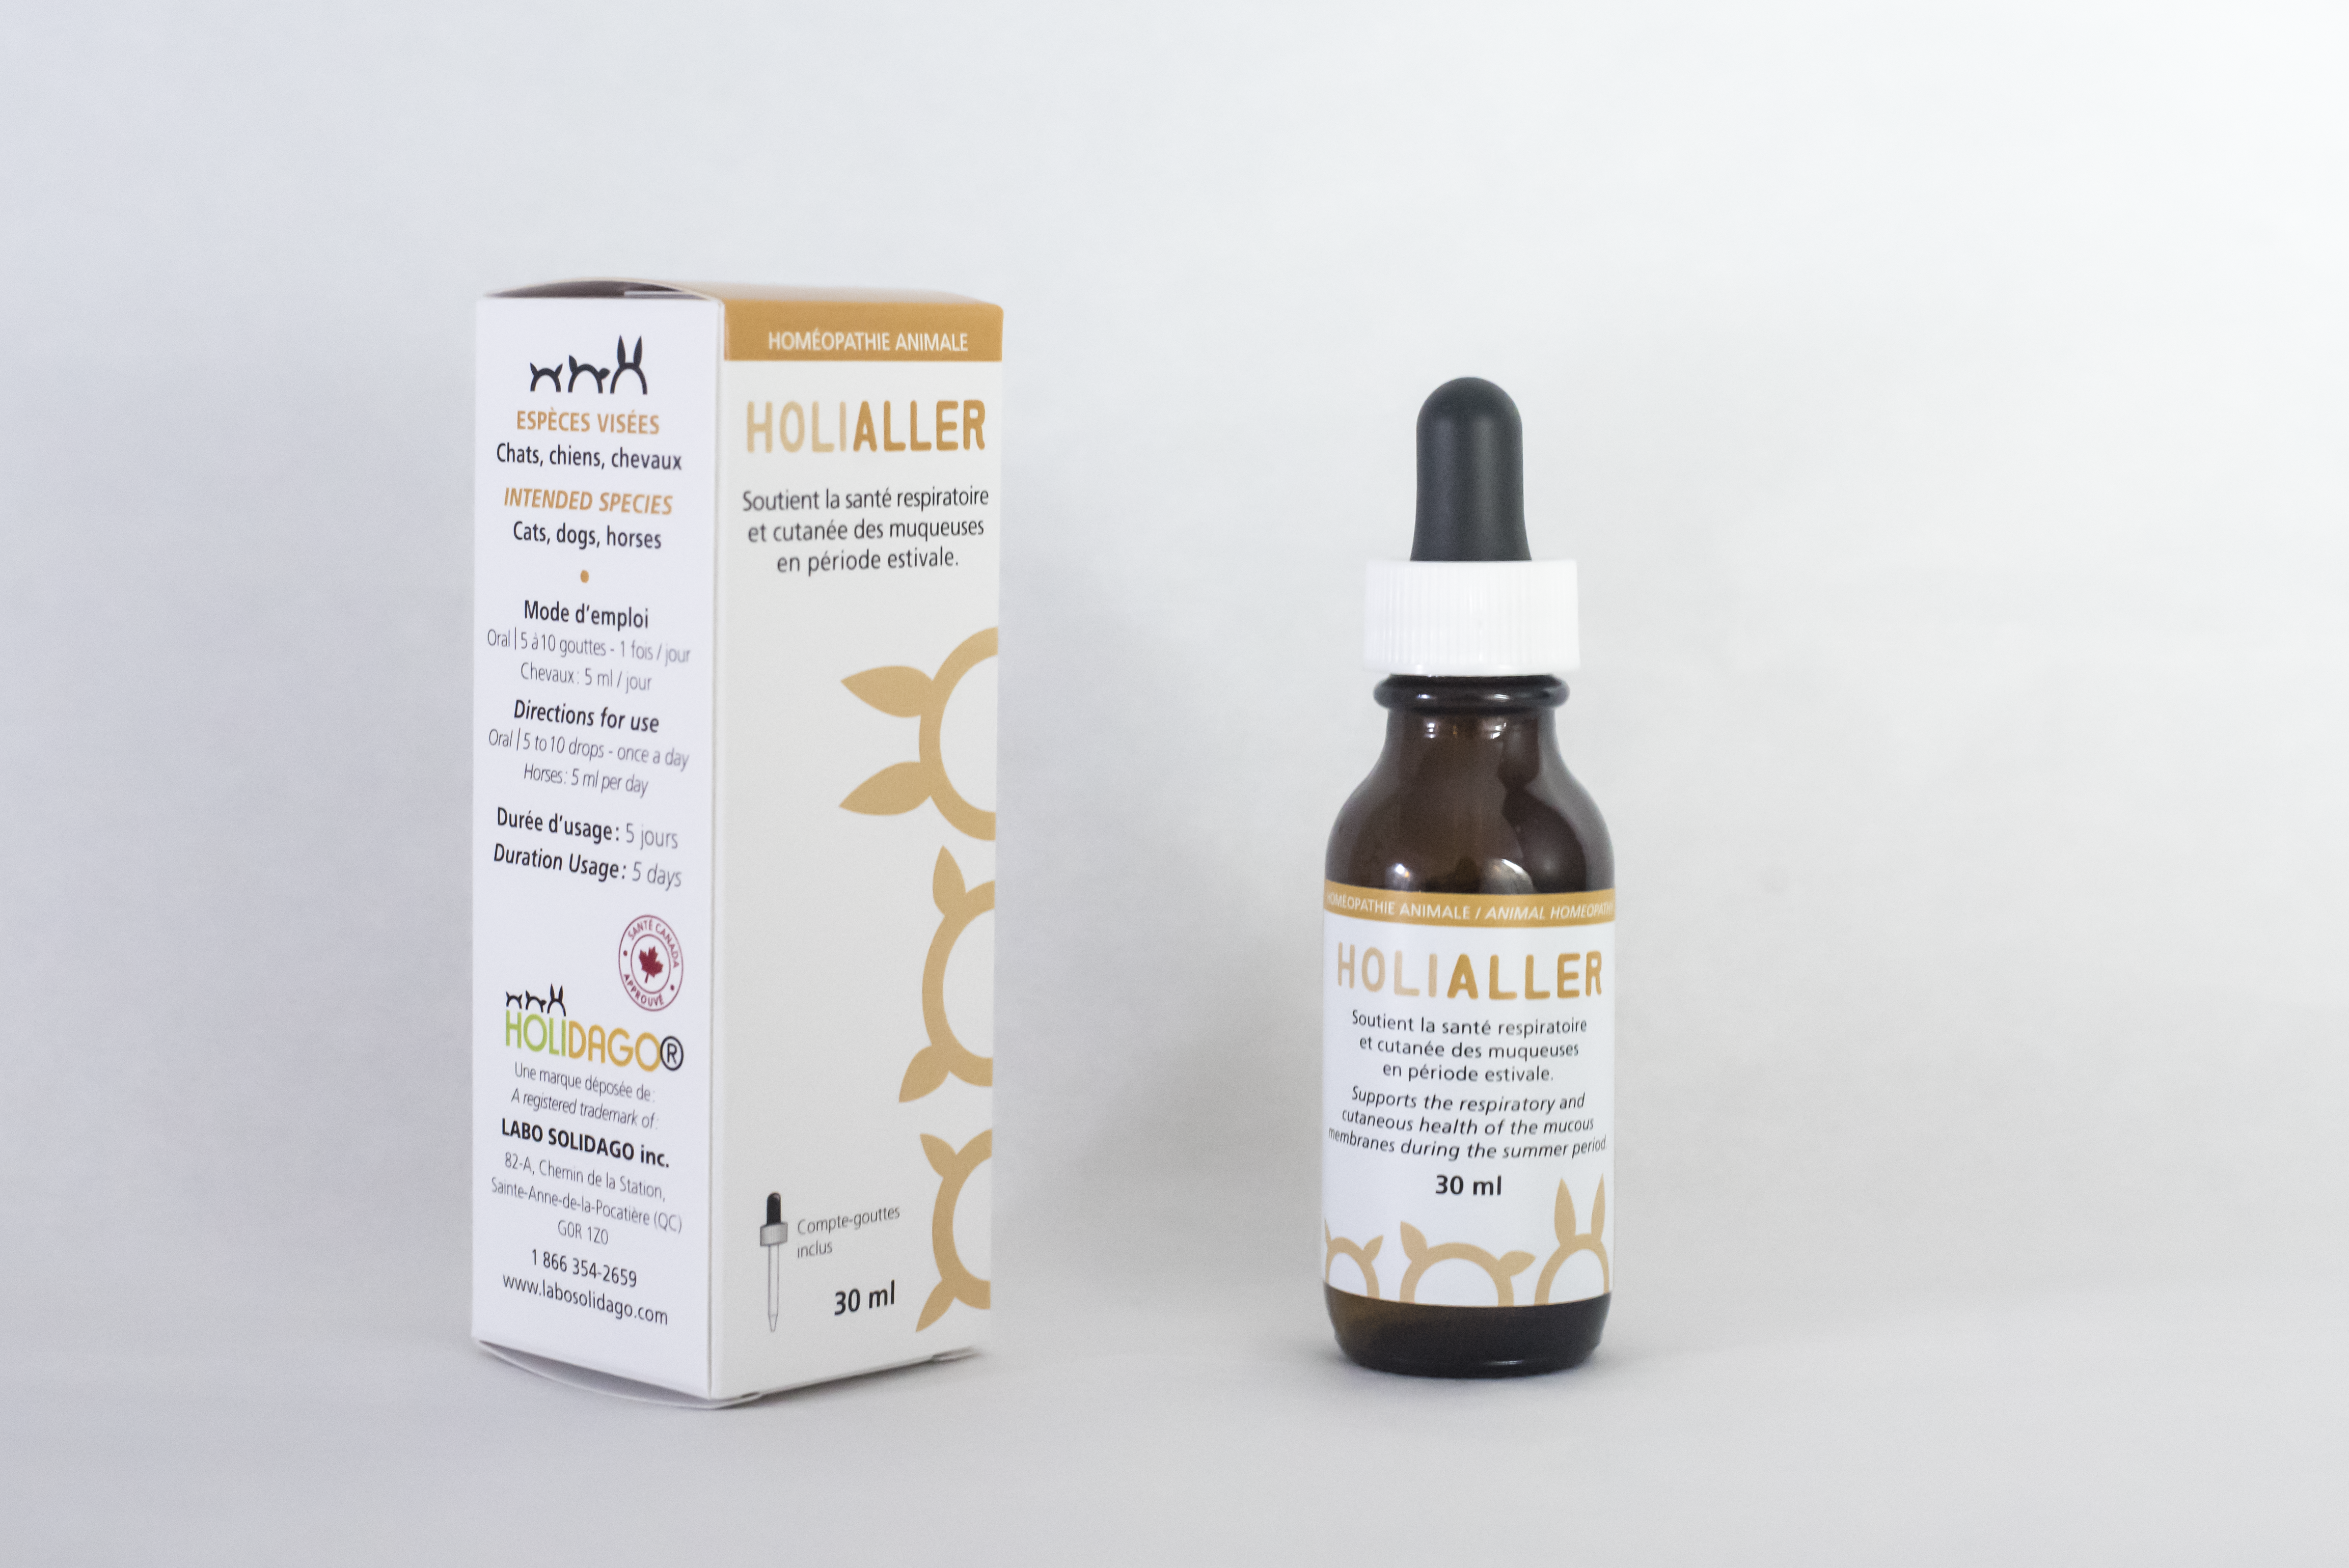 HoliAller - Pour traverser les changements de saison et d’alimentation en douceur.